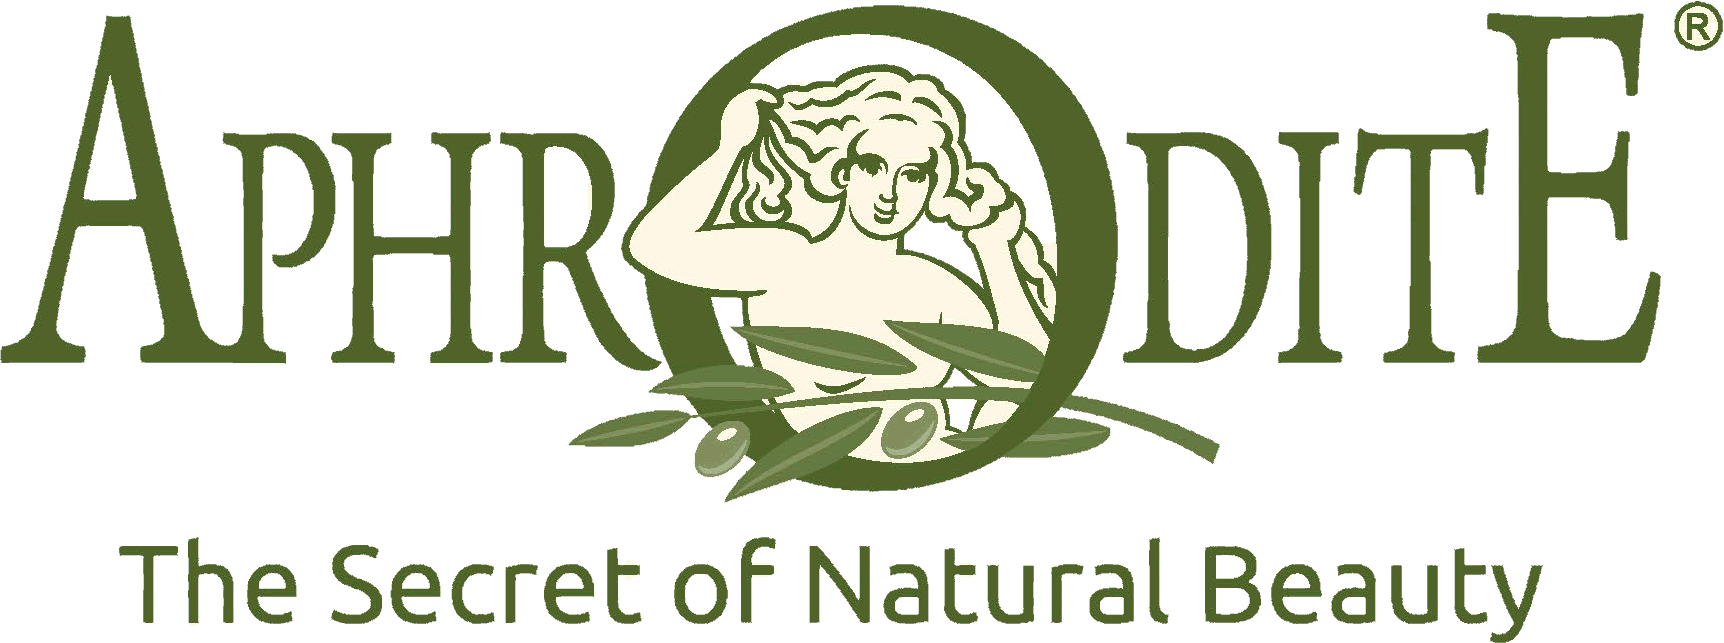 Aphrodite Skin Care Transparent logo